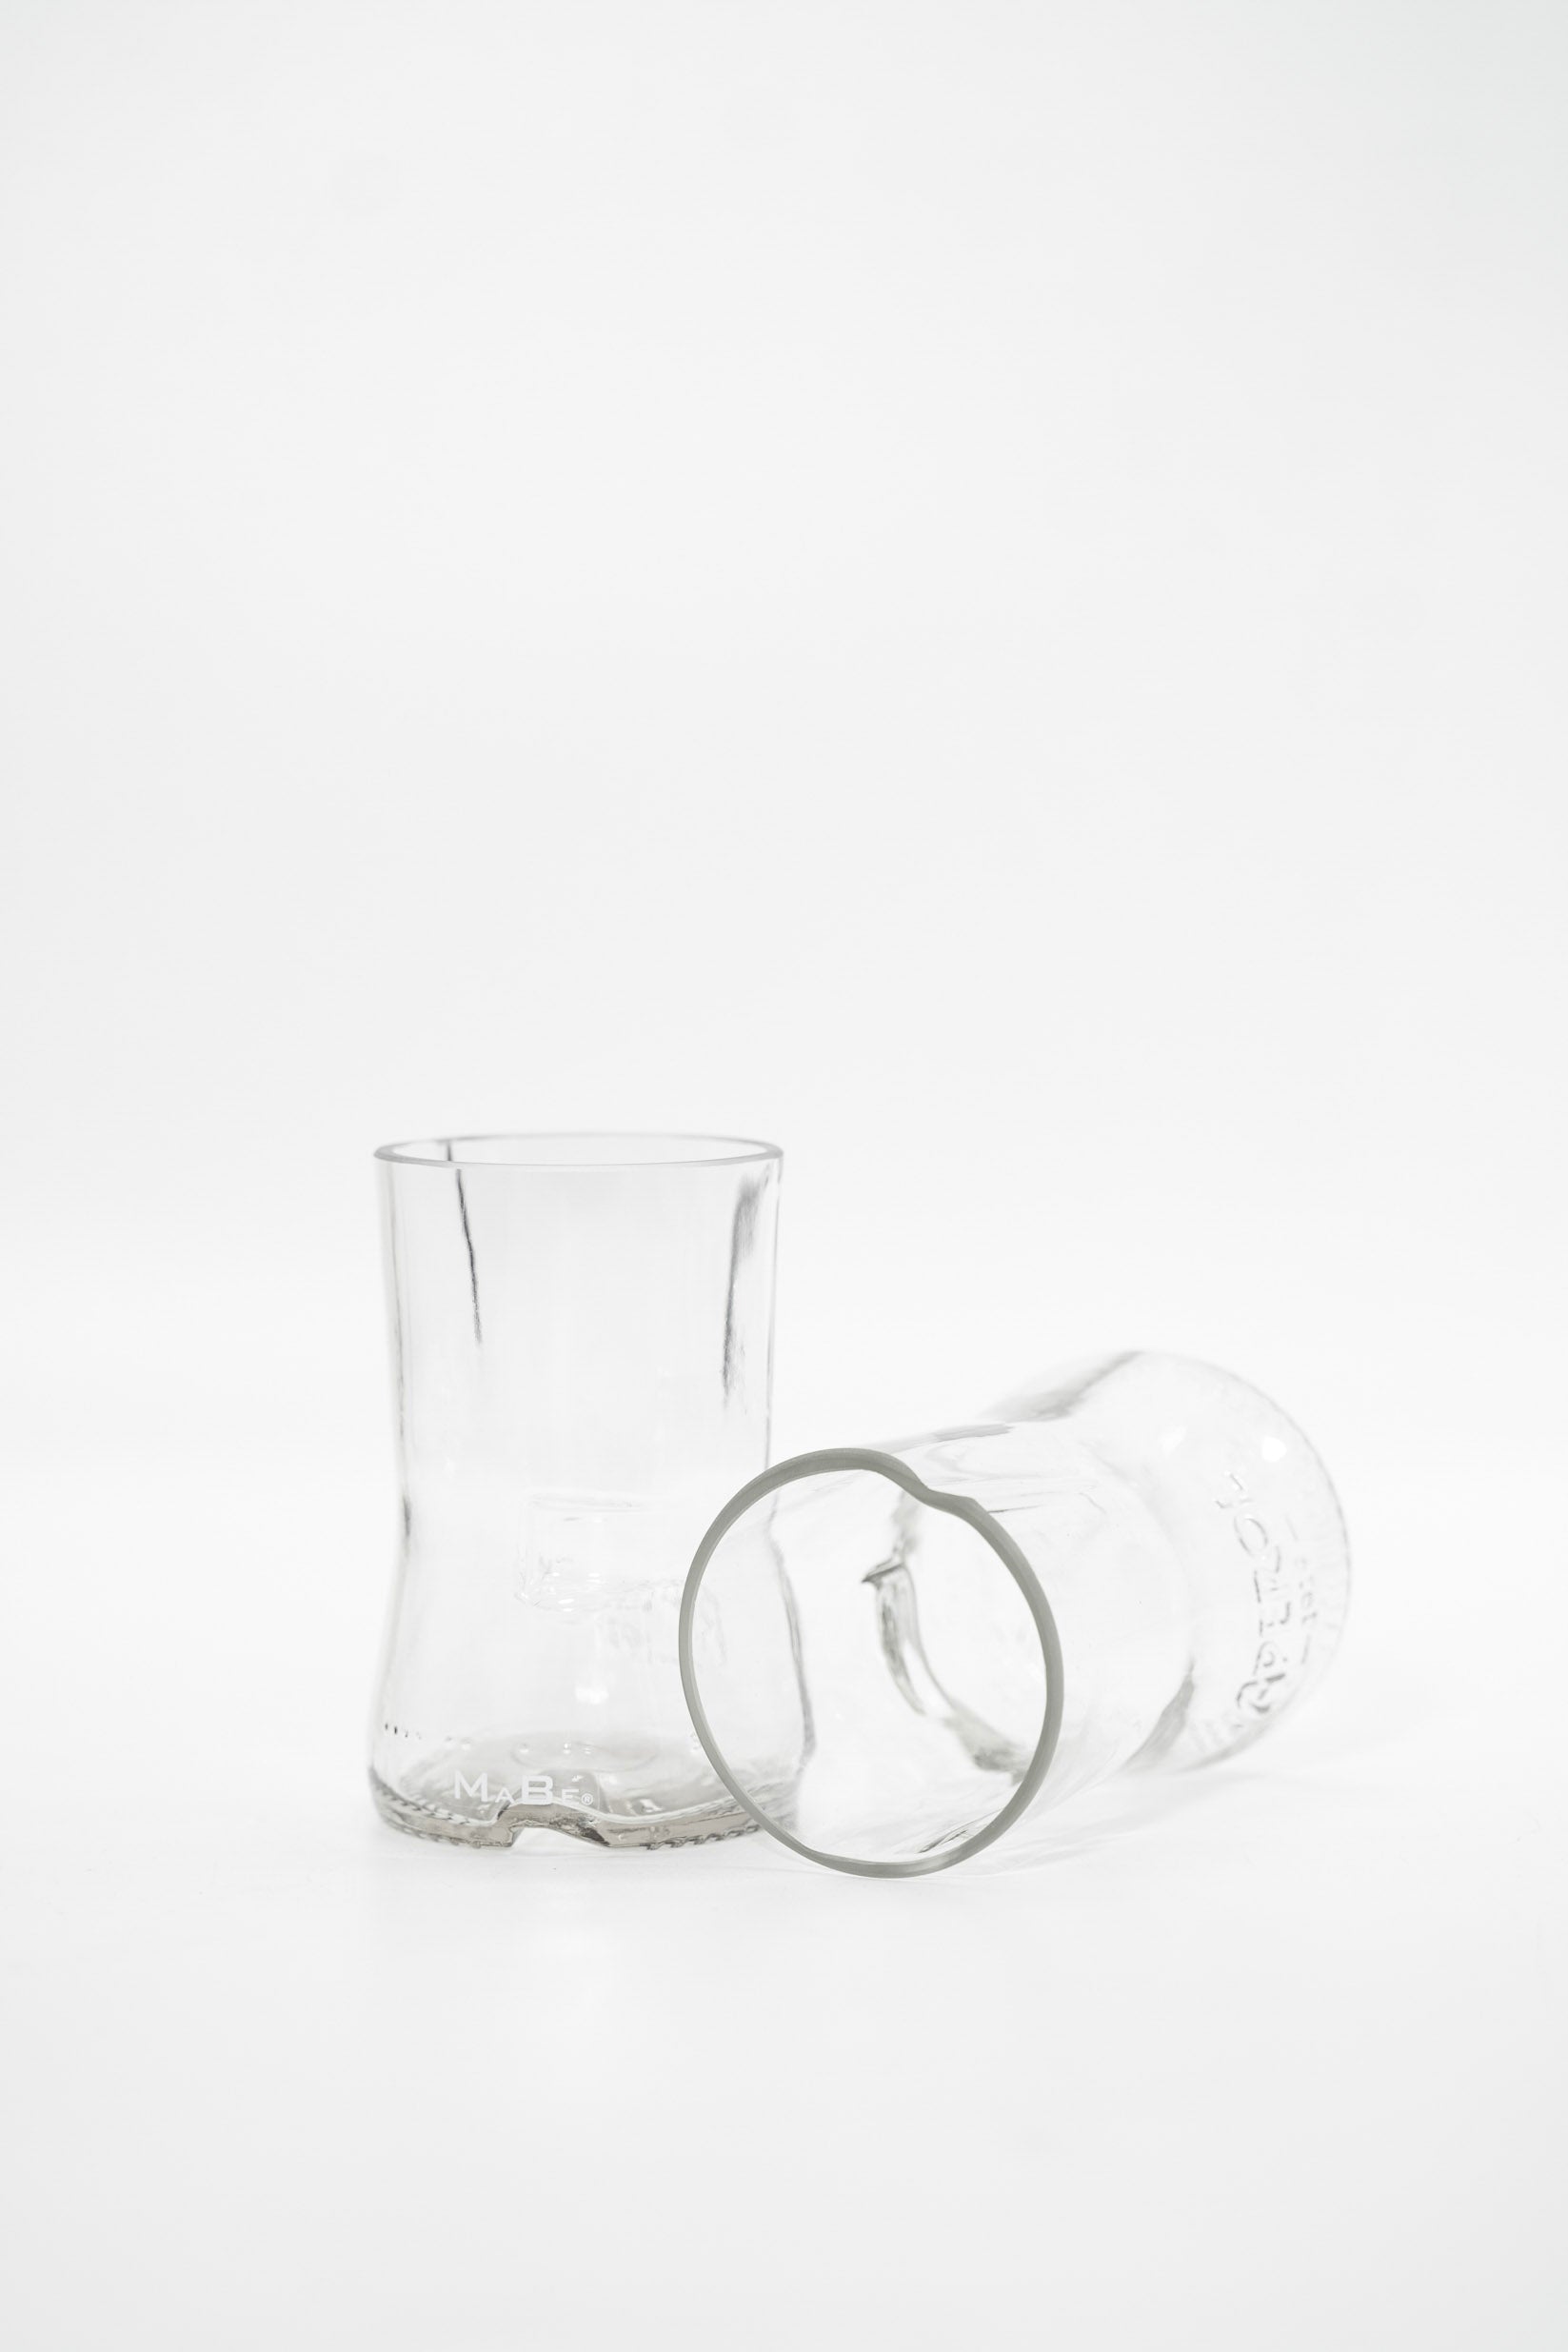 Aperol Glas UPCYCLING aus der leergetrunkenen 0,7l Flasche